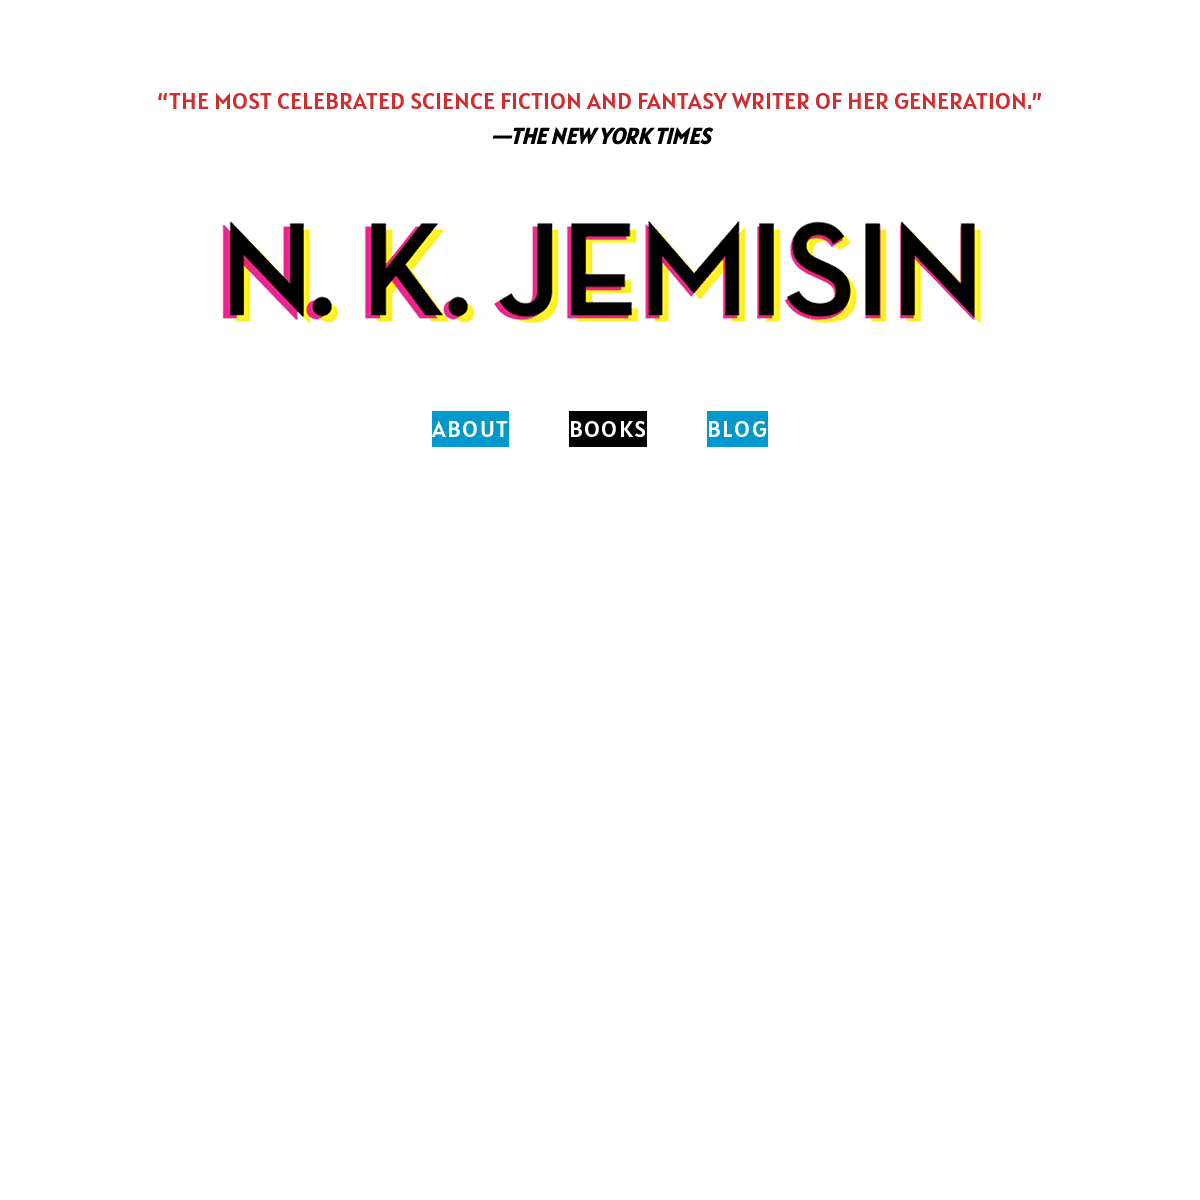 A complete backup of https://nkjemisin.com